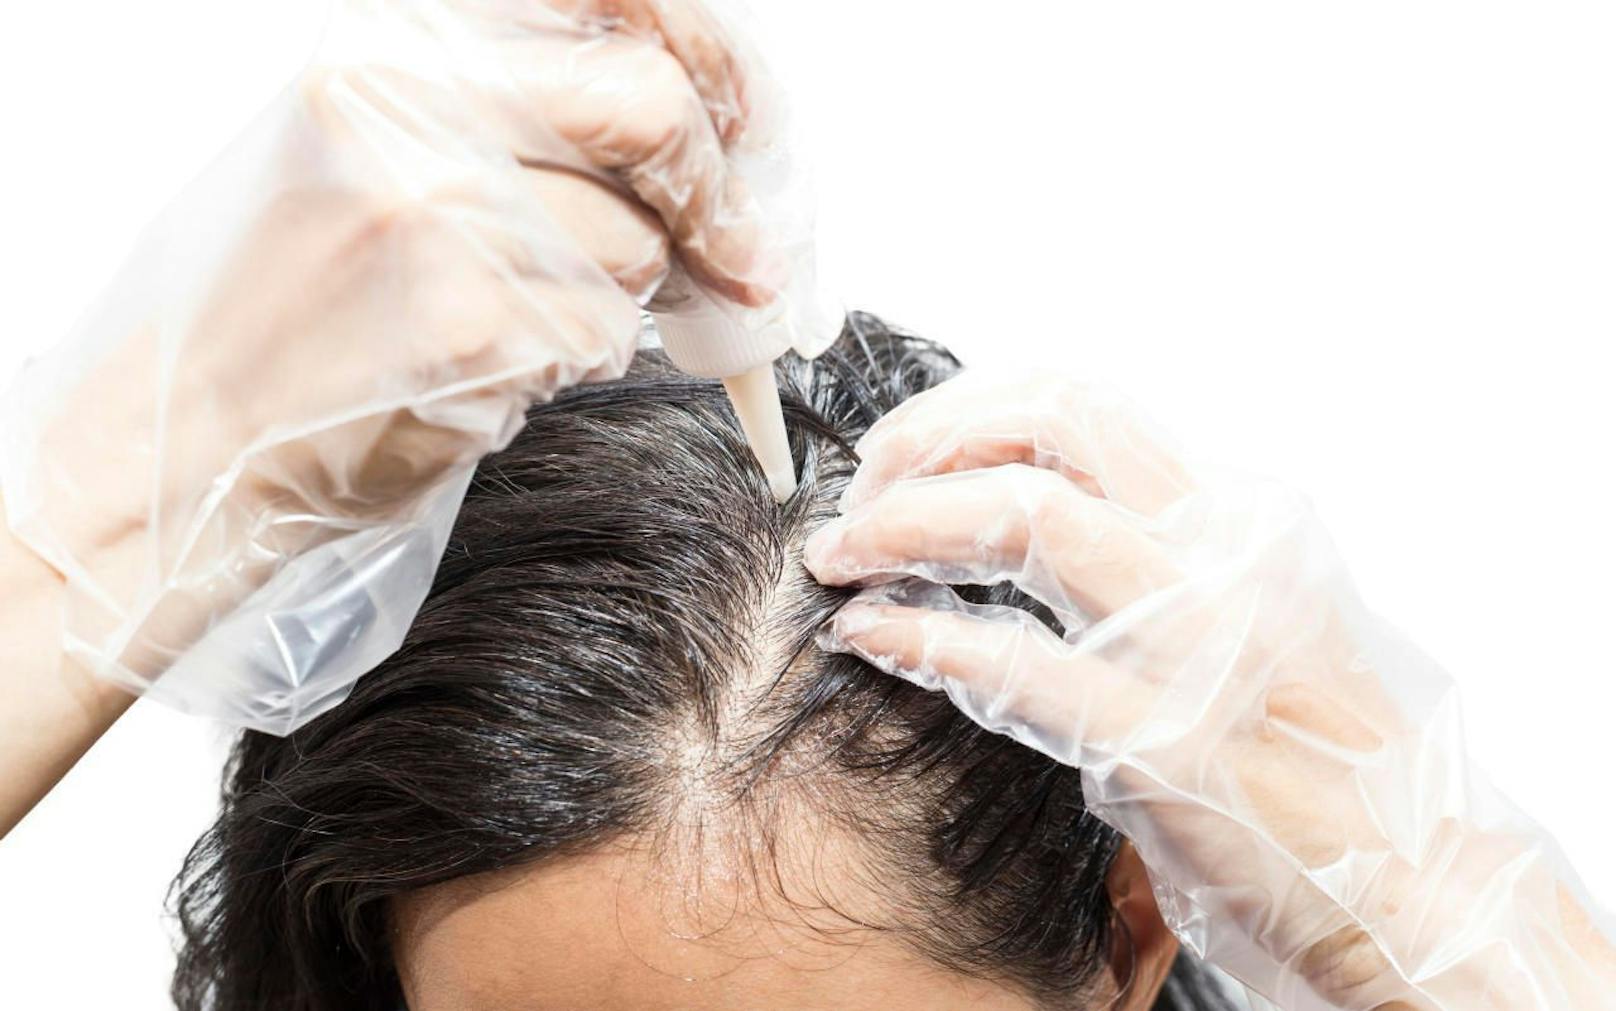 Hairstylistin Carola Staudinger warnt: Nicht selber die Haar färben und wenn doch, dann bitte mit vom Friseur abgemischter Farbe.